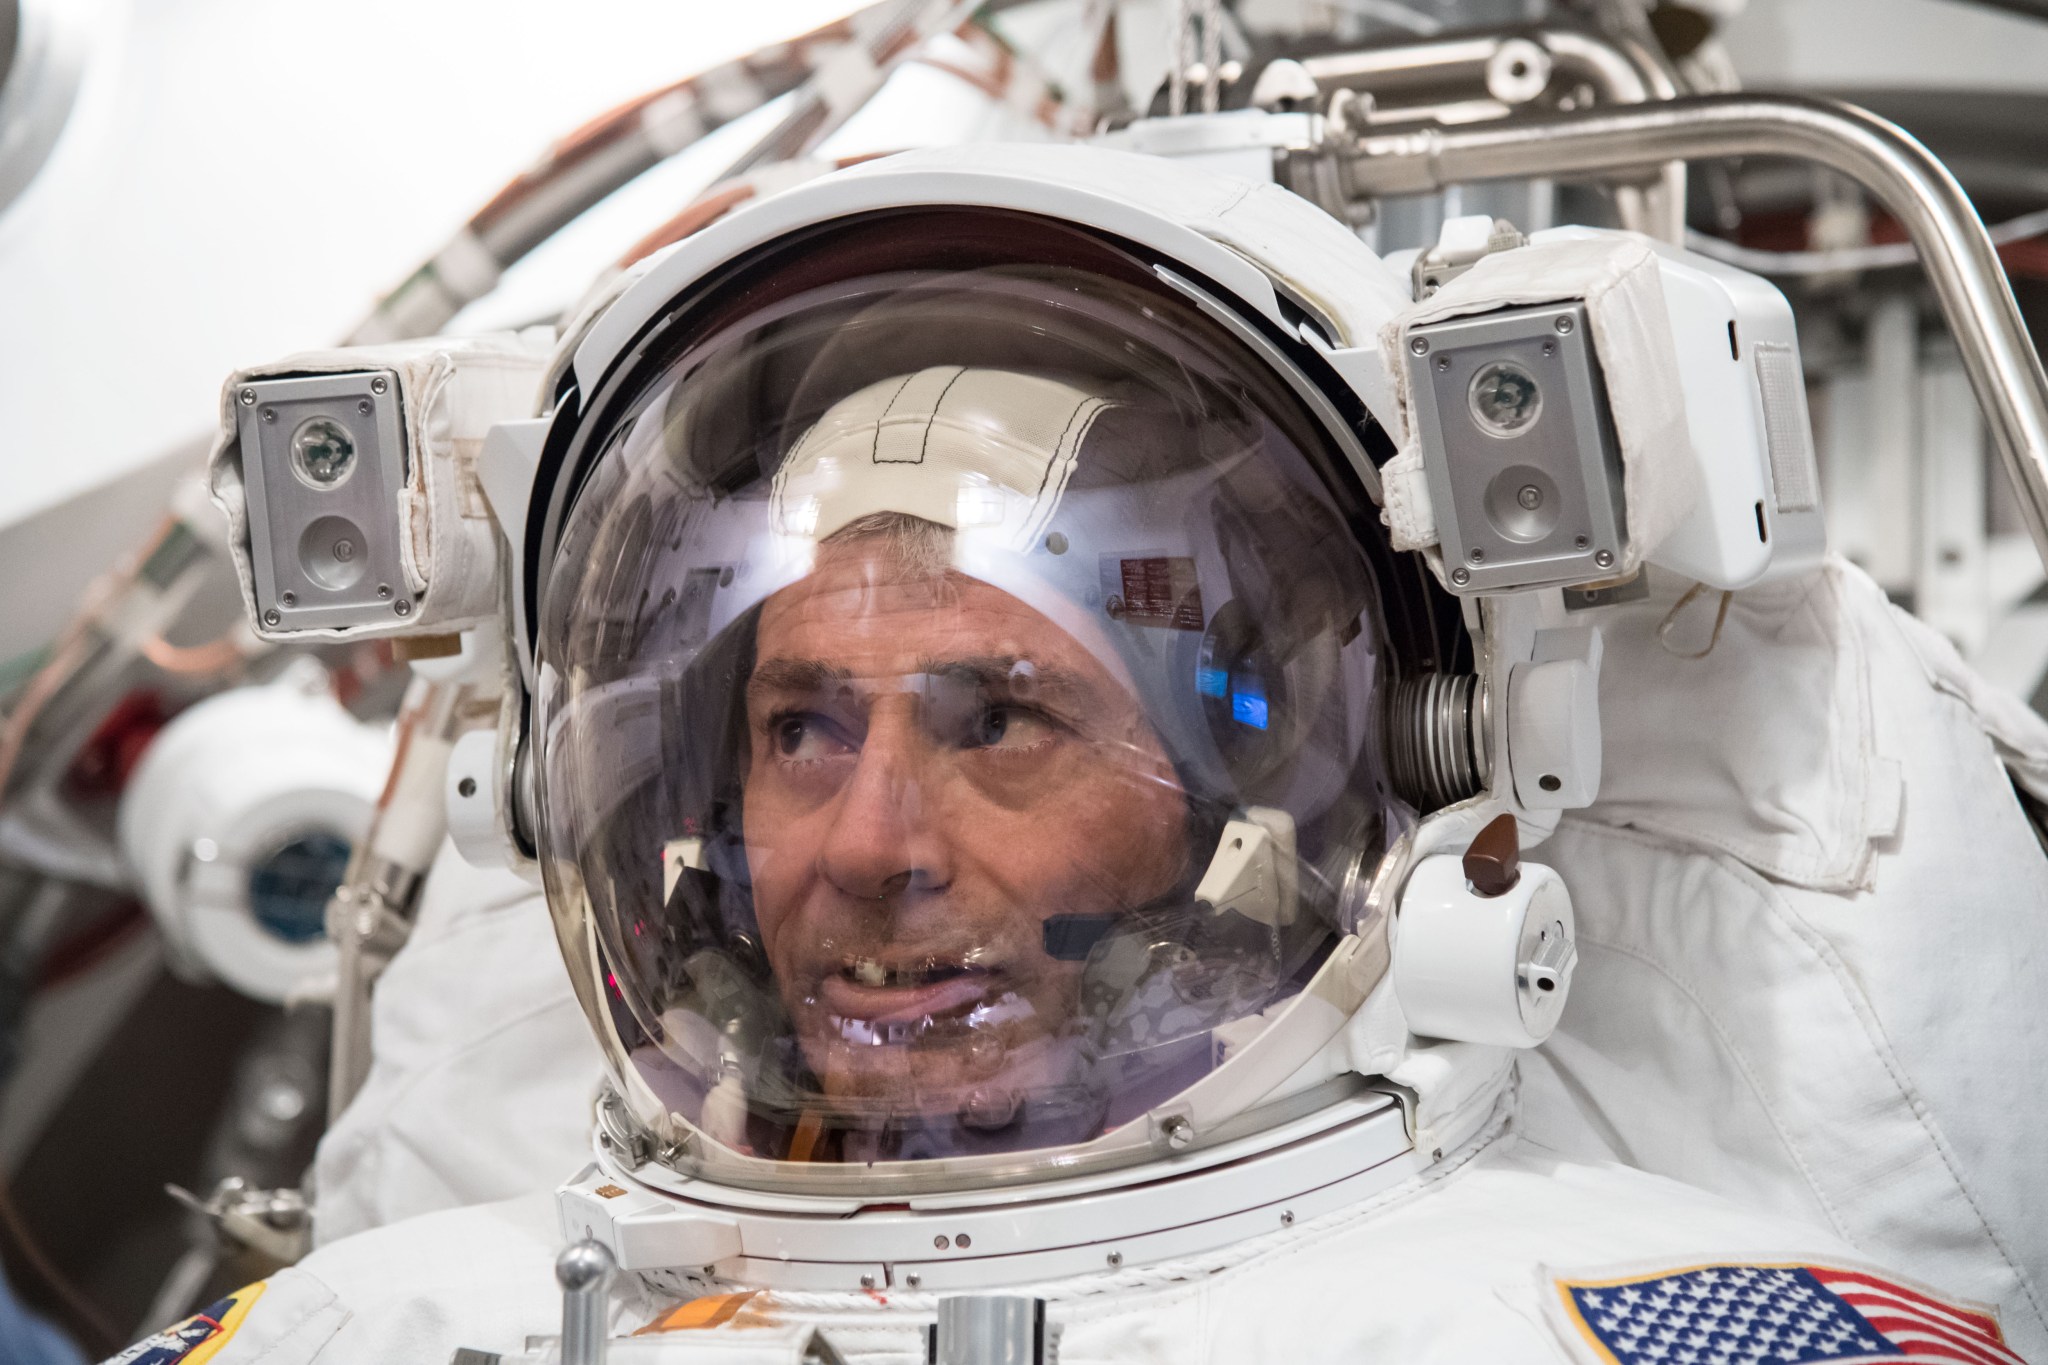 Expedition 53 crew member Mark Vande Hei